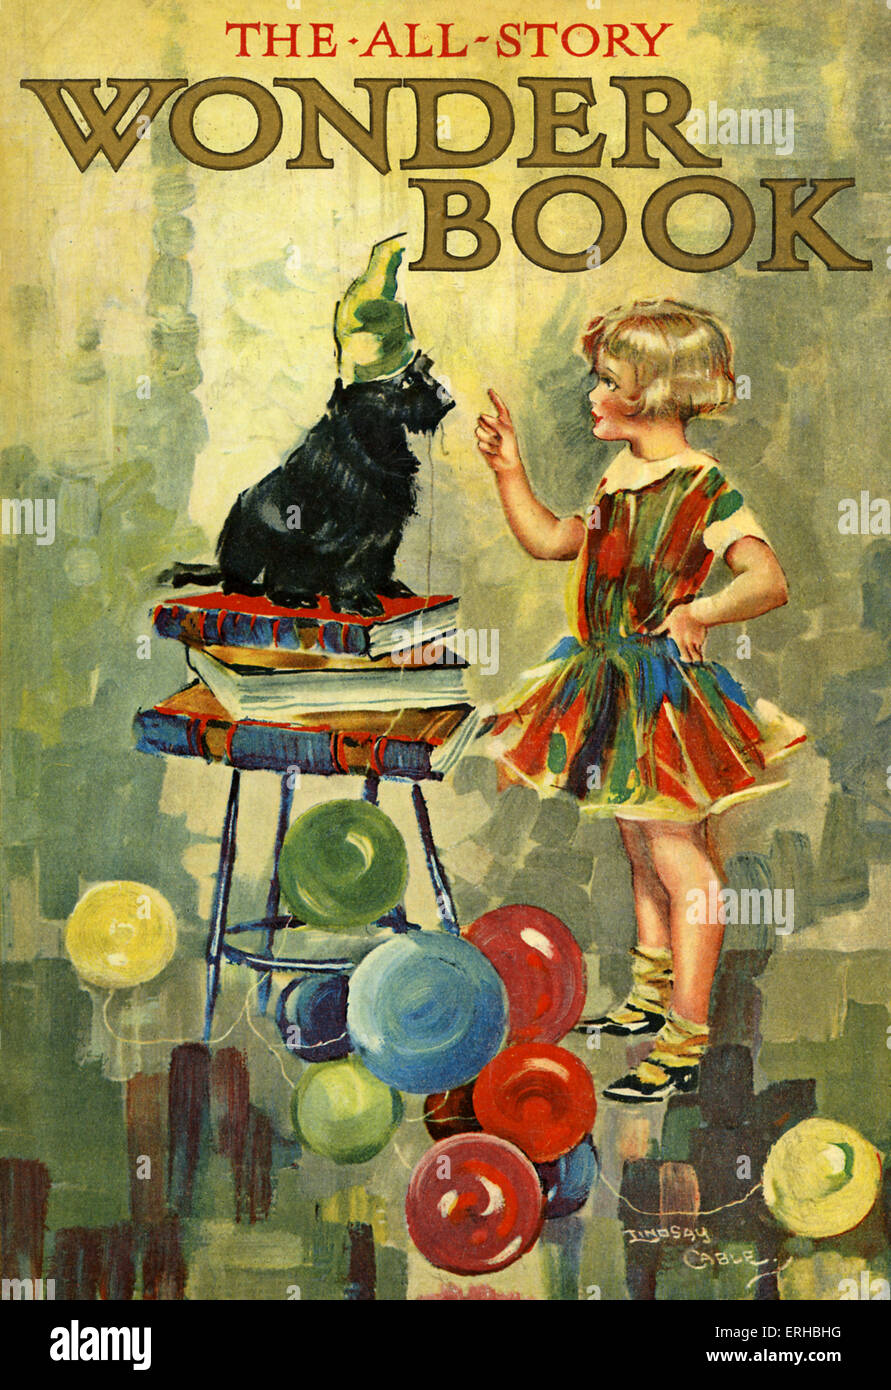 L'All-Story Wonder Book, illustration par W. Lindsay Câble. Un enfant un chien apprend à se tenir sur une pile de livres Banque D'Images